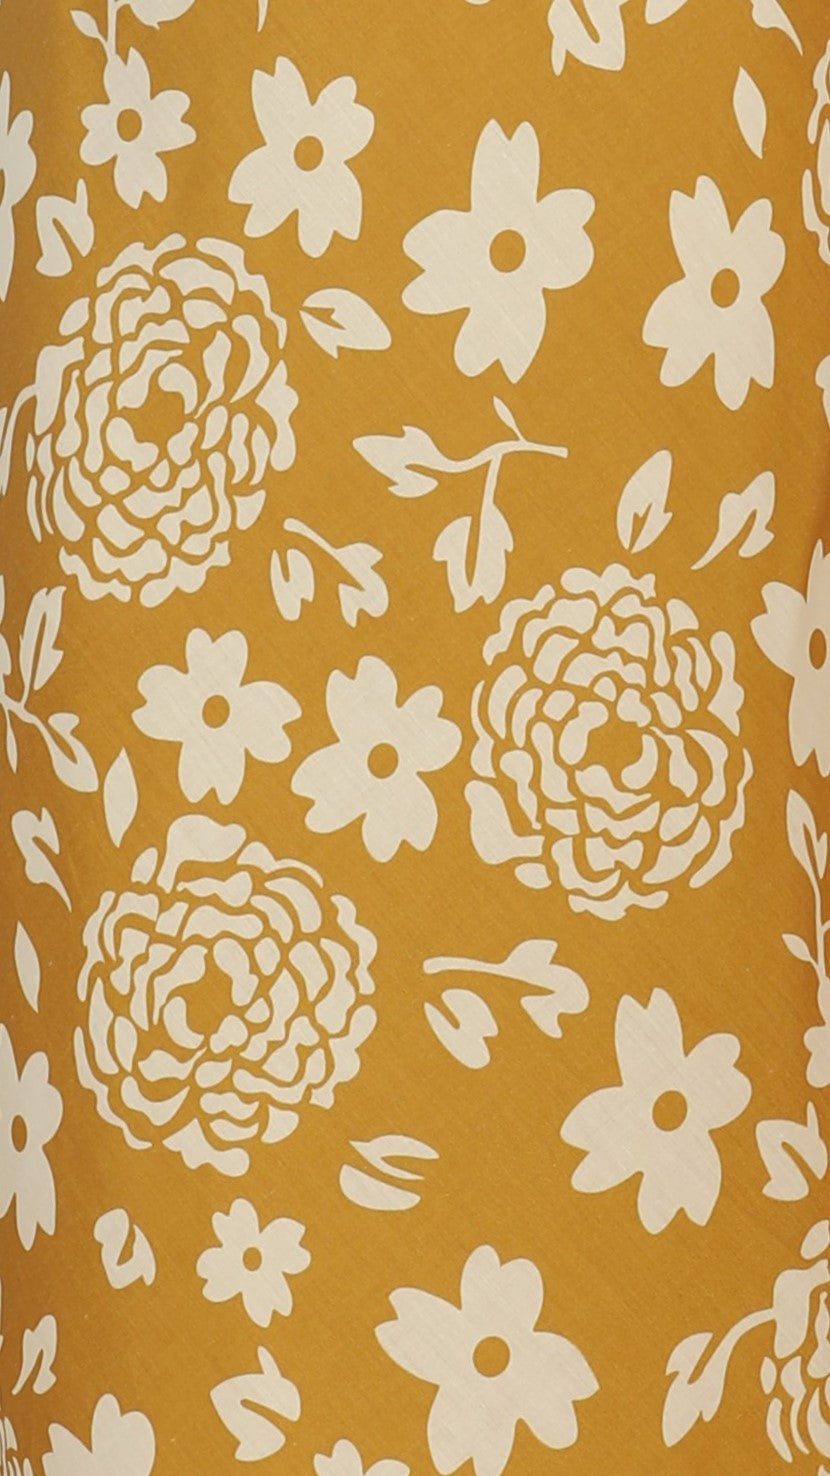 Delilah Midi Dress - Mustard Floral